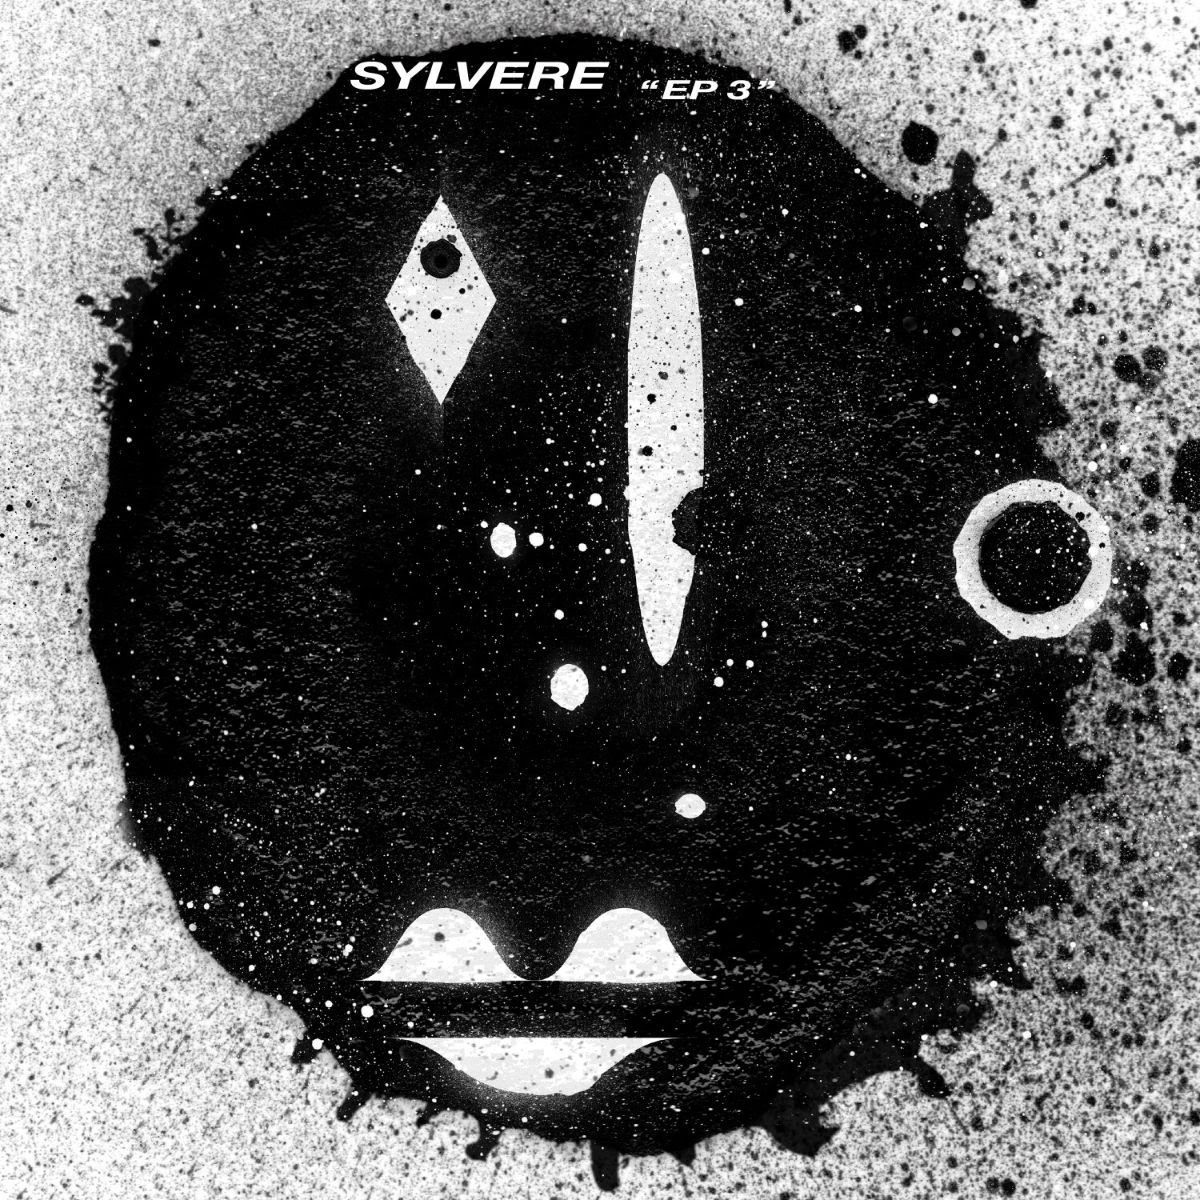 Pre-Order Now:
Sylvere - EP3
@MonkeytownRec

bleep.com/release/416736